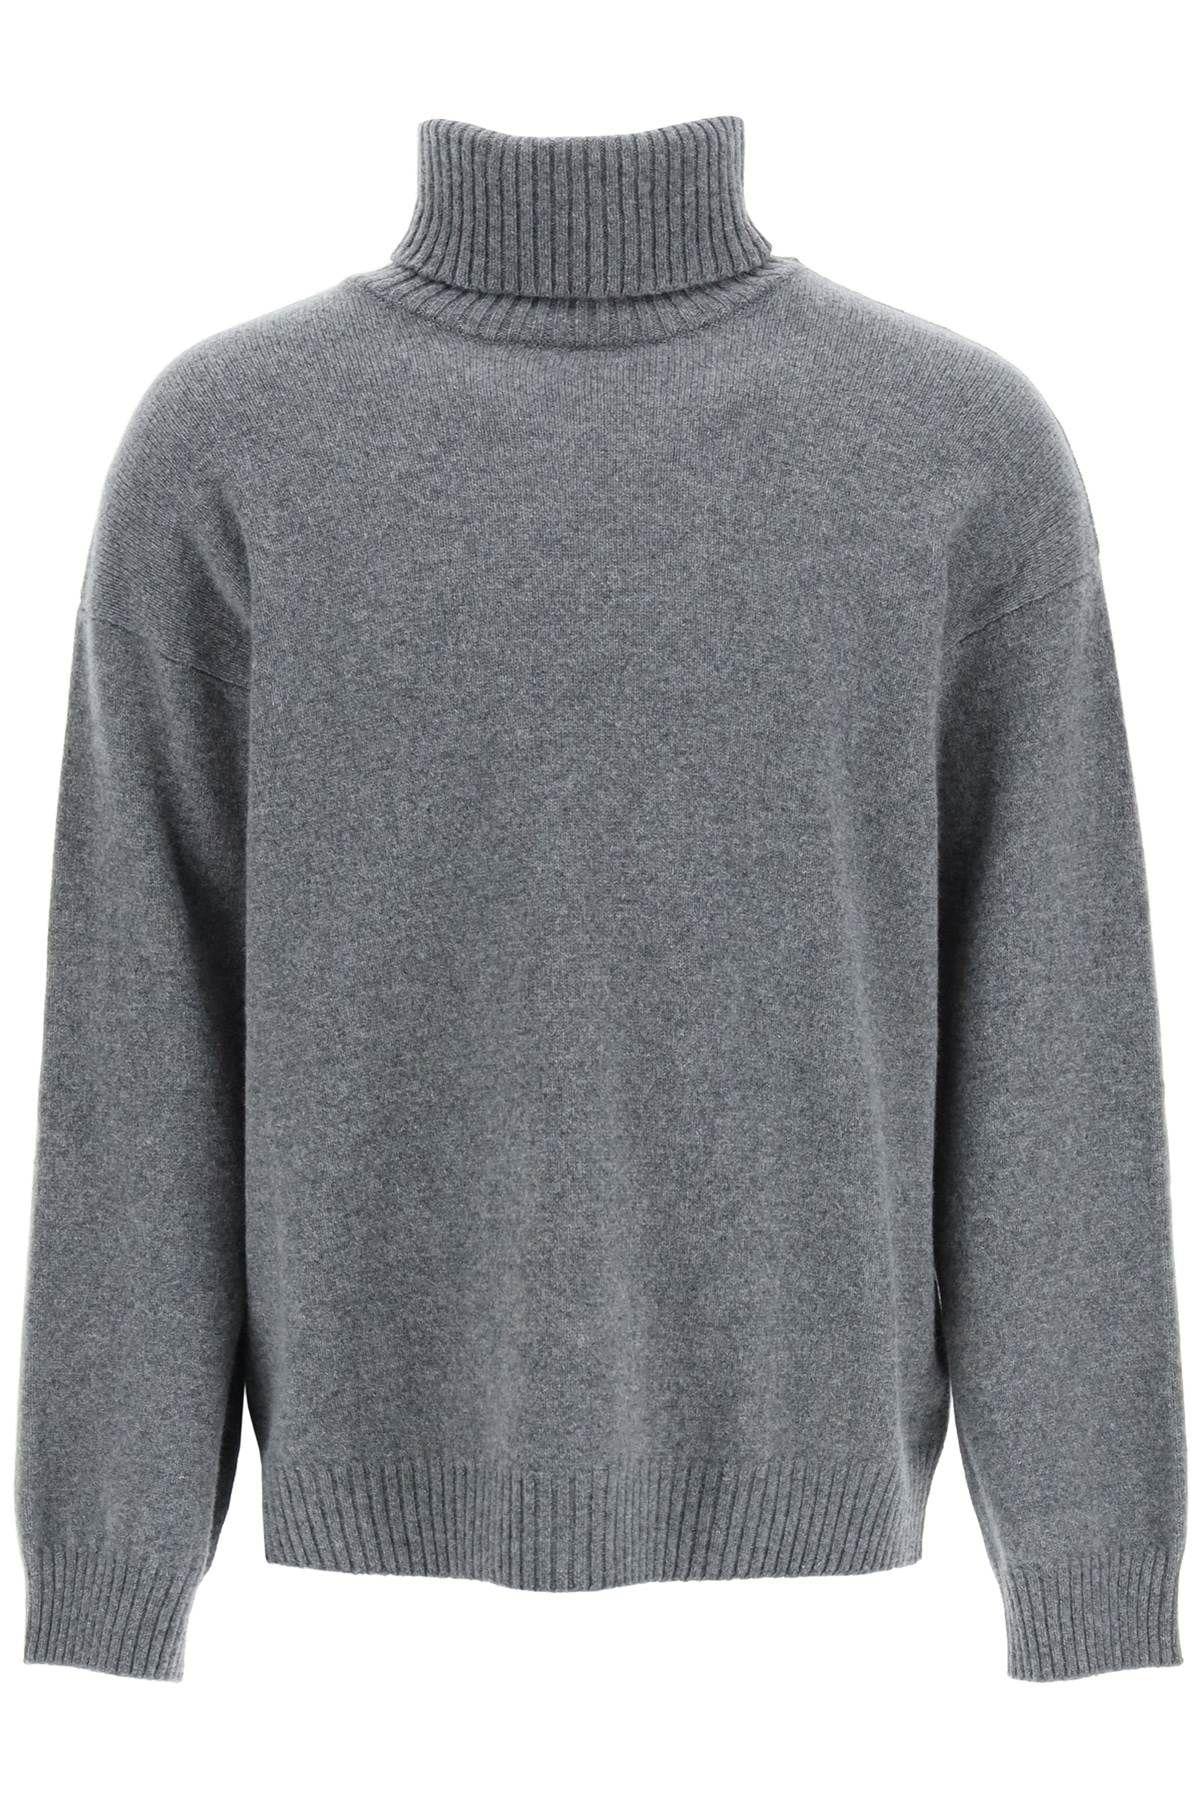 A.P.C. marc Turtleneck Sweater